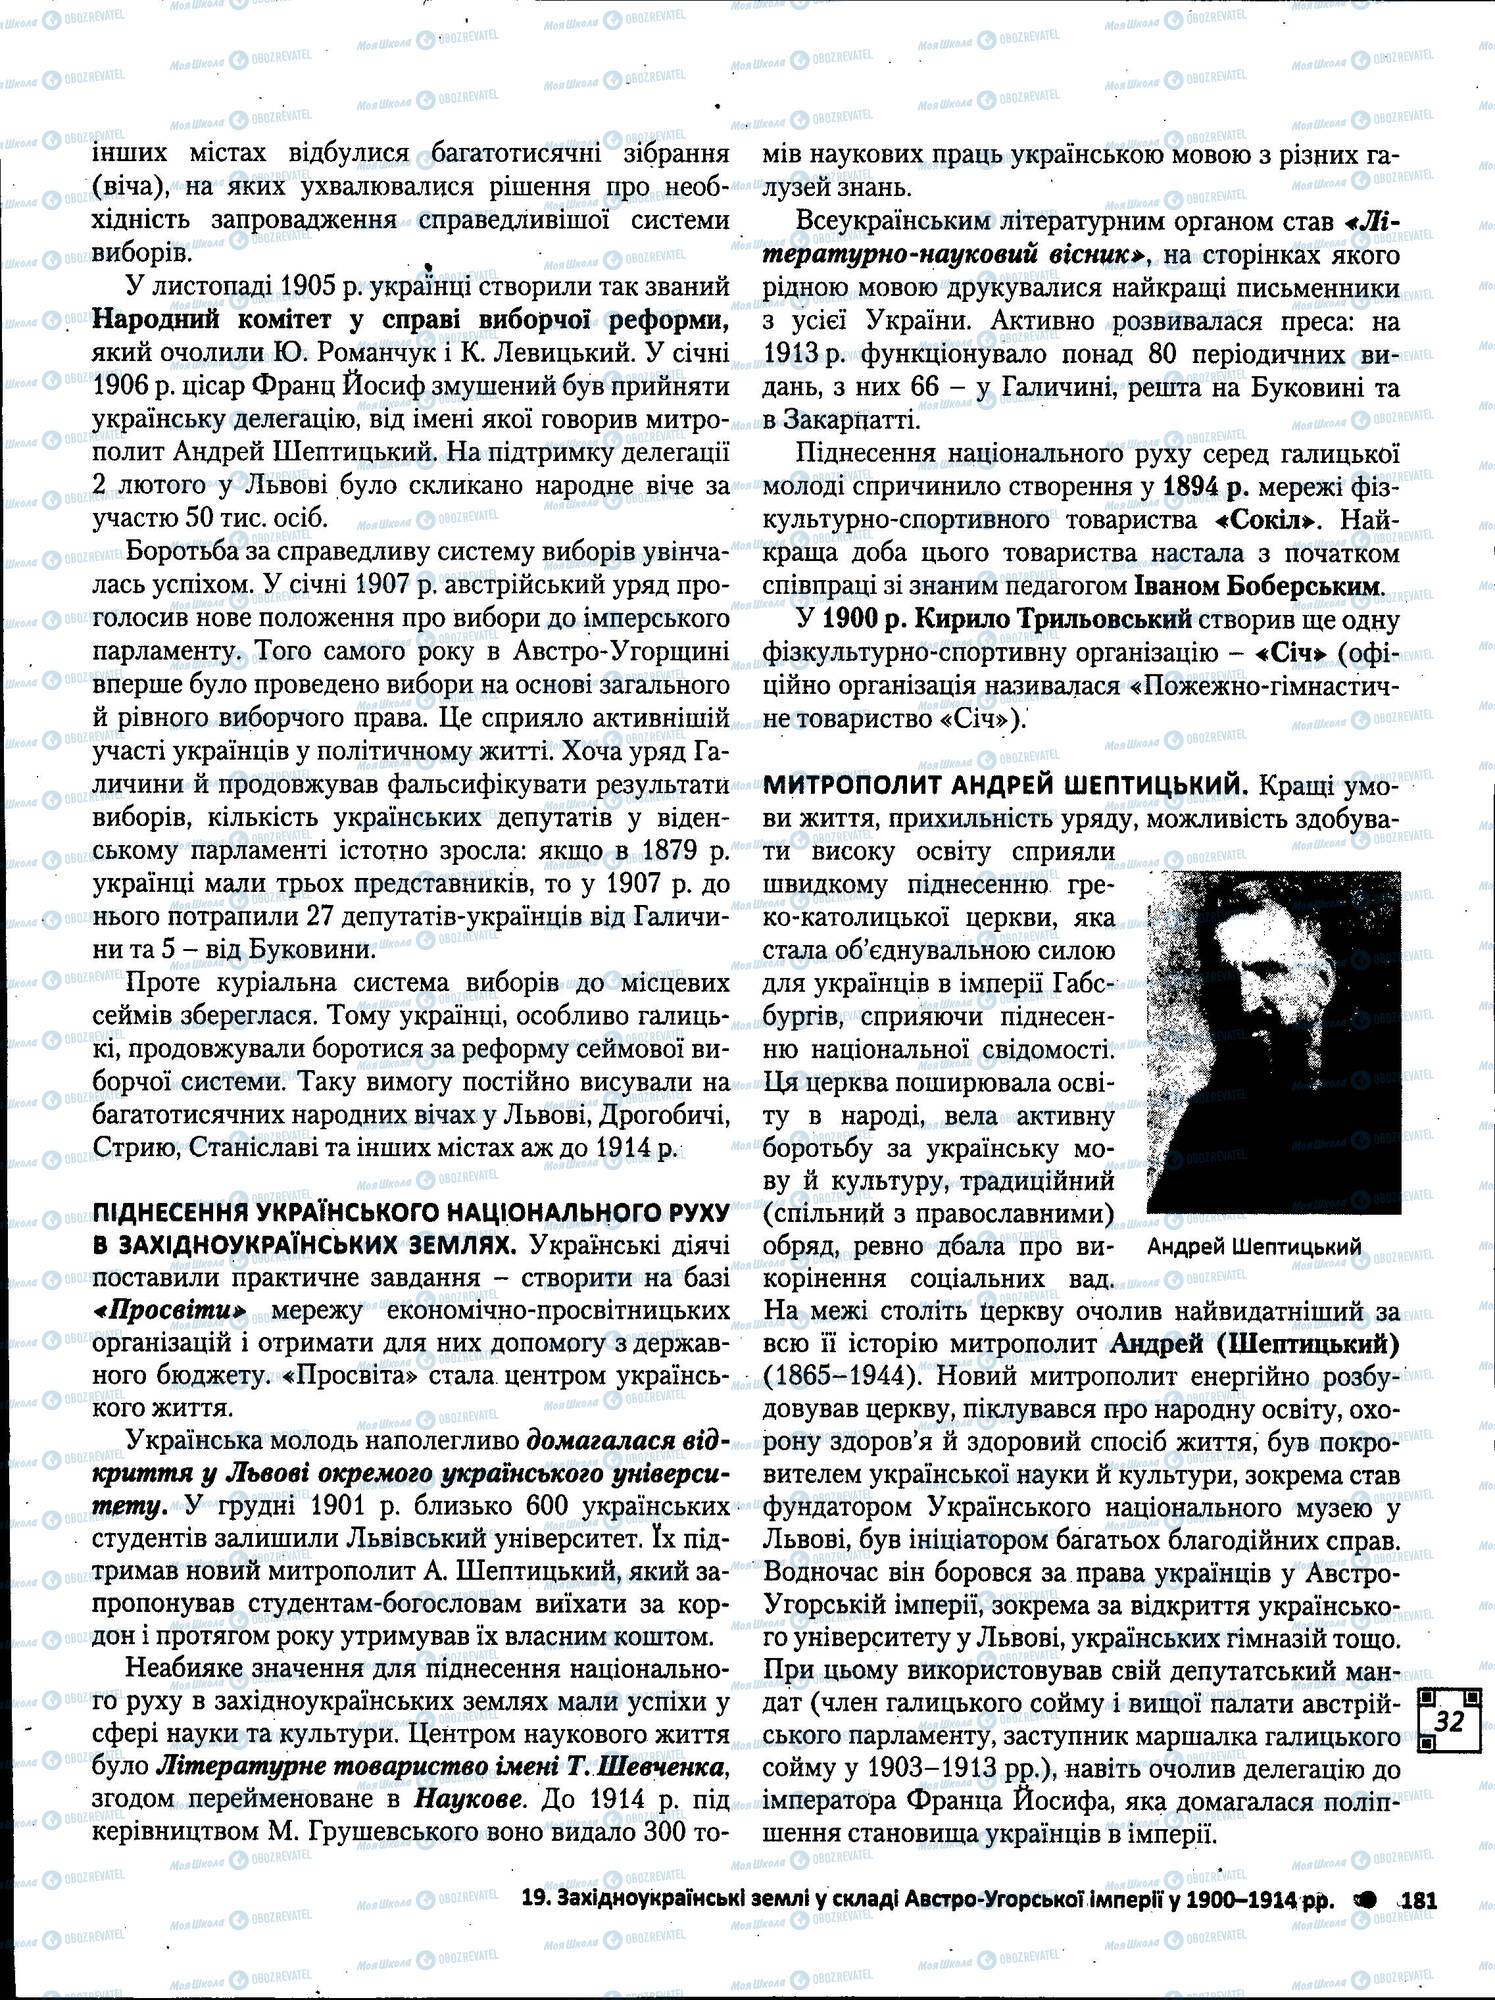 ЗНО История Украины 11 класс страница 181